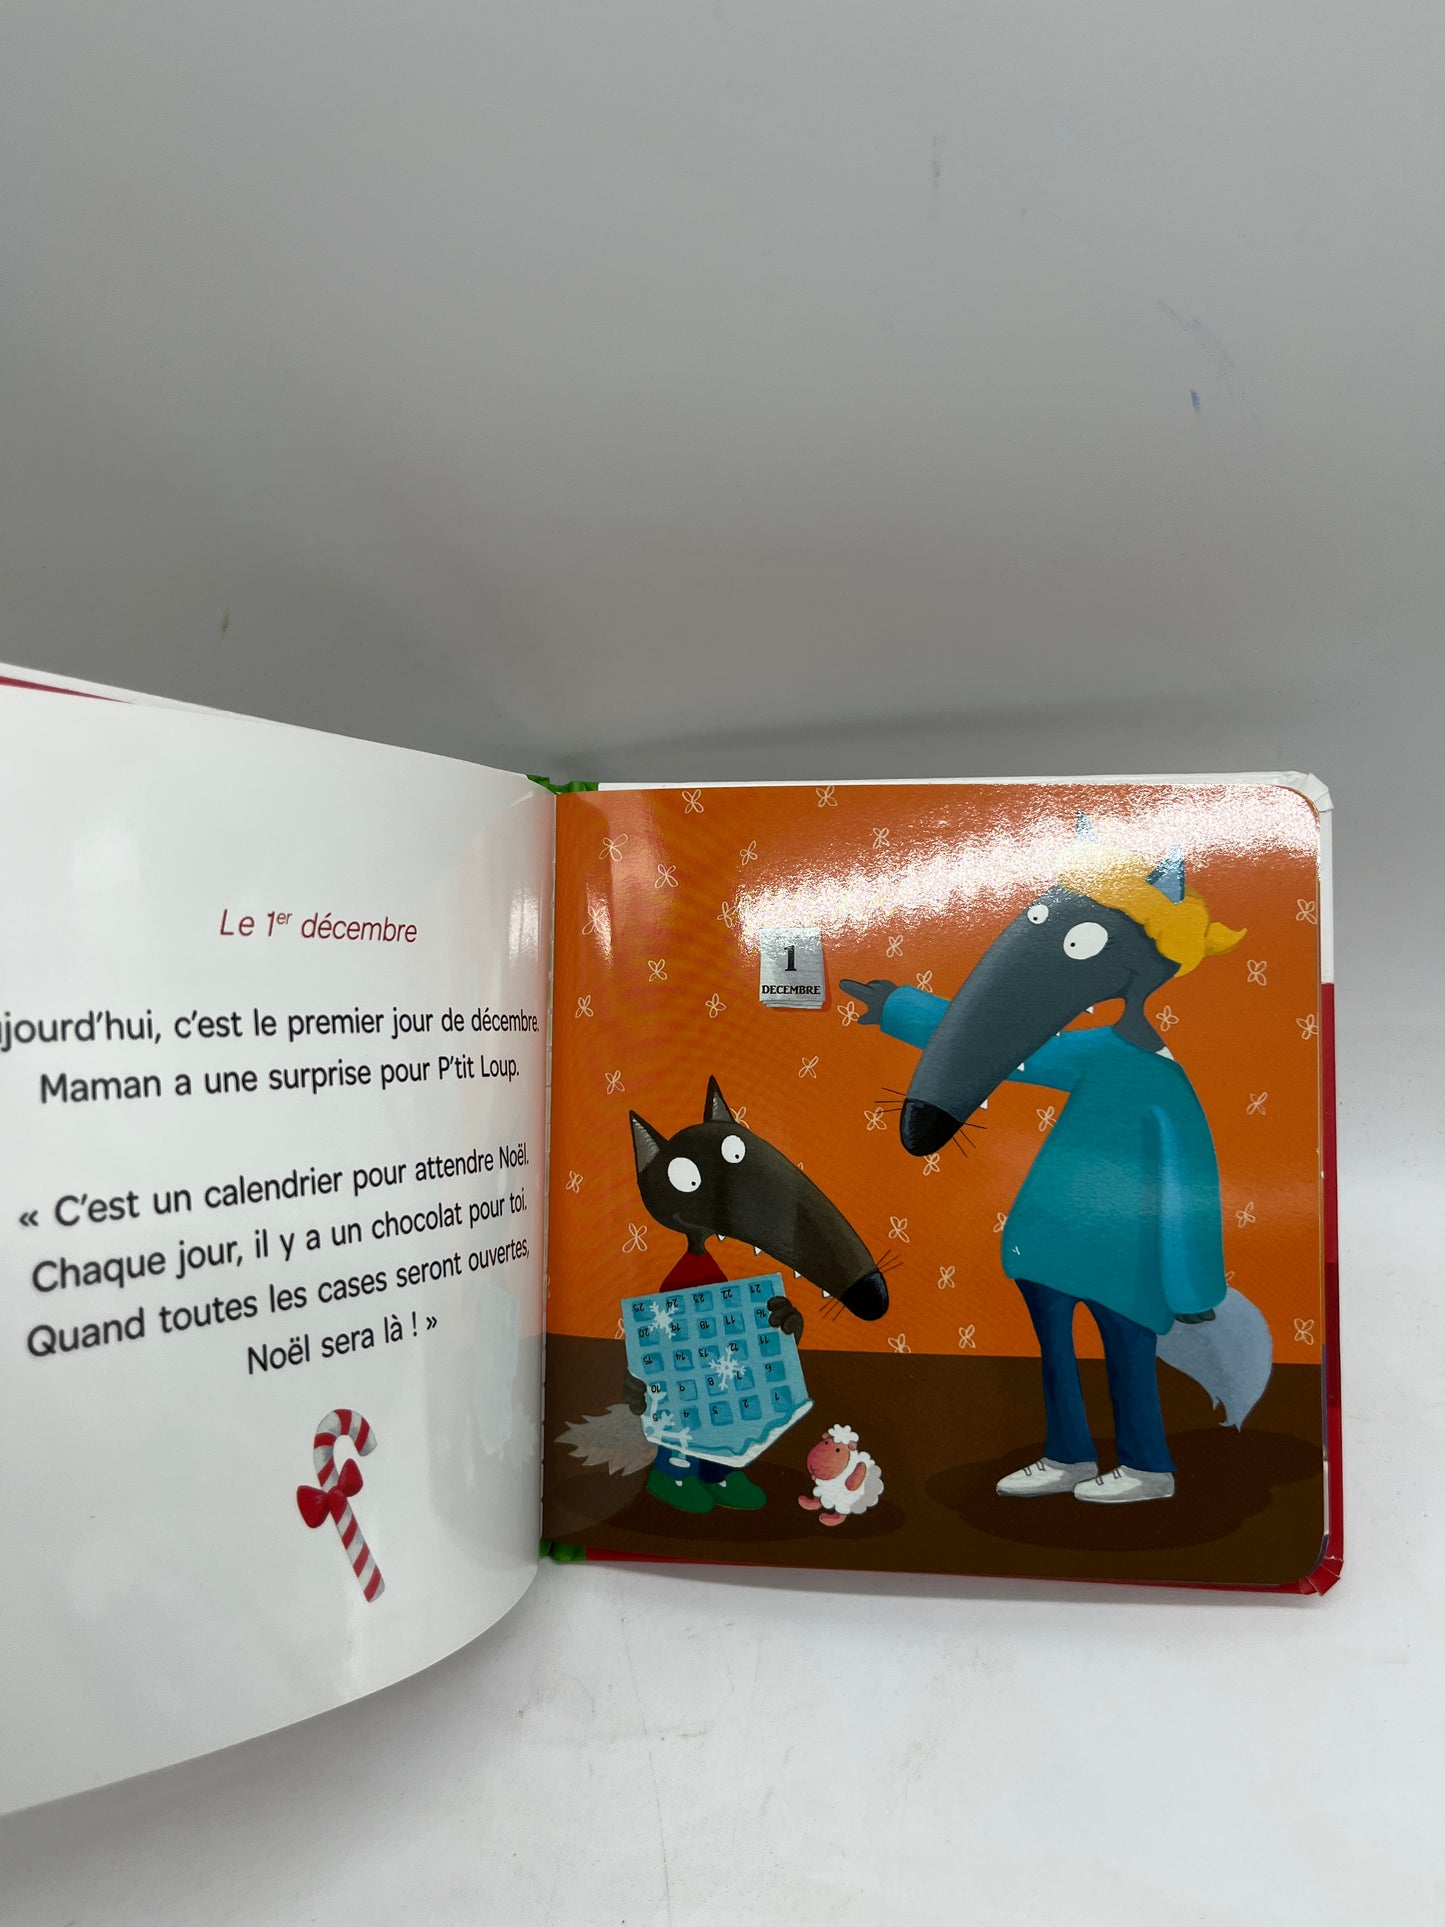 Livre P’tit Loup prépare  Noël edition Auzou Neuf